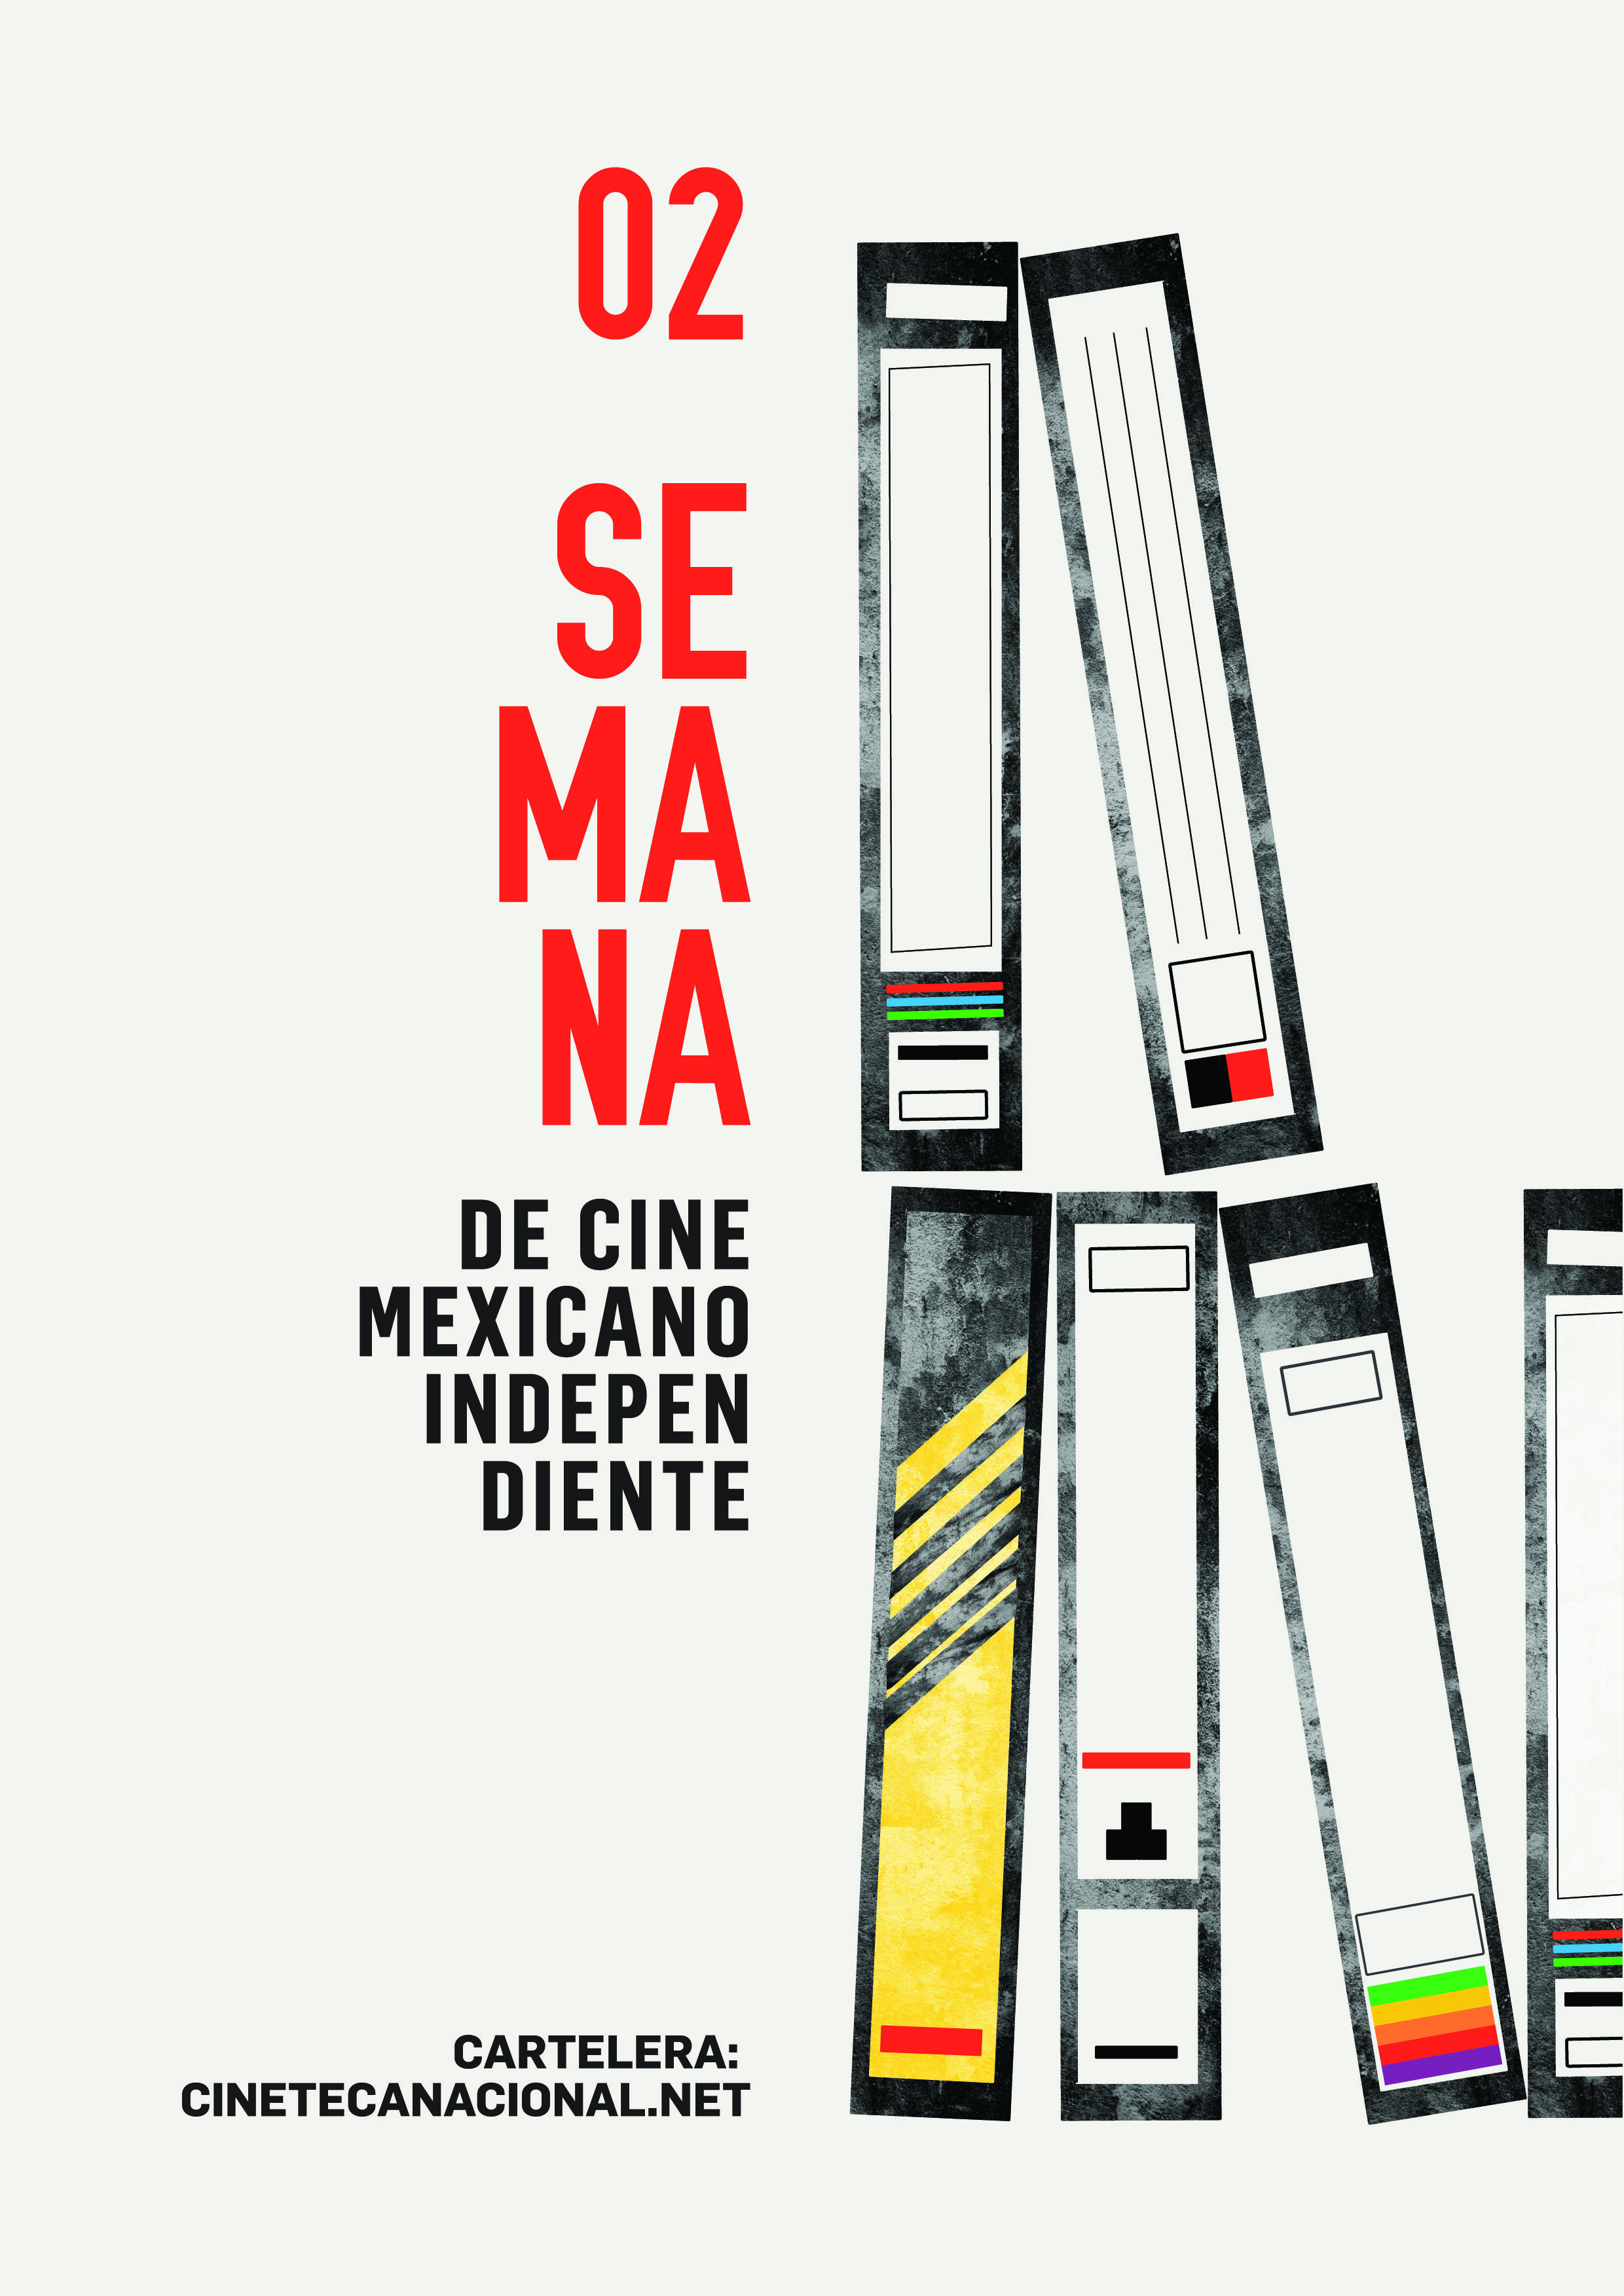 Regresa la semana de Cine Mexicano Independiente